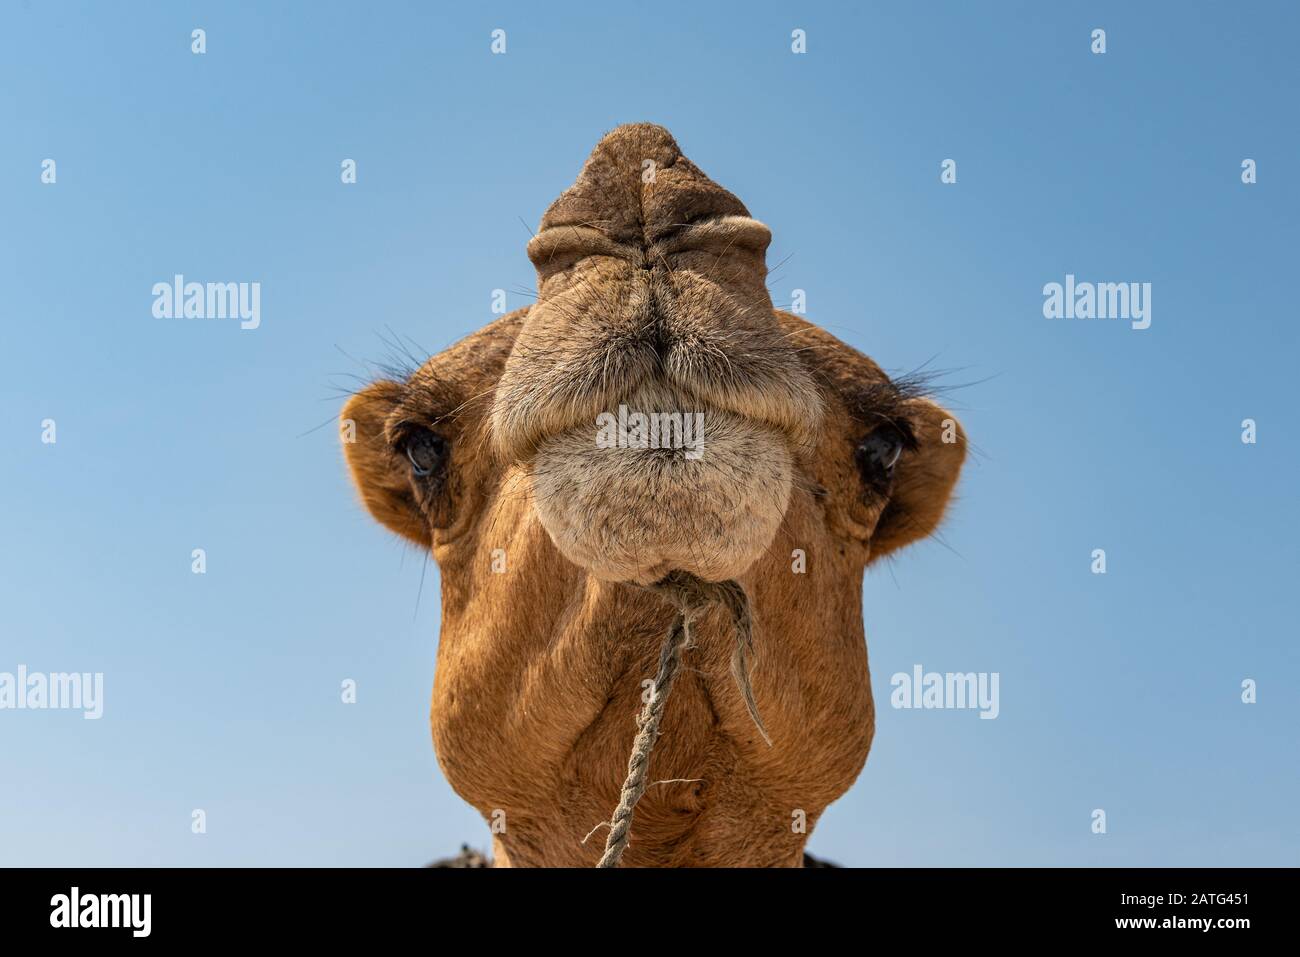 Head of Camel in the salt desert Stock Photo